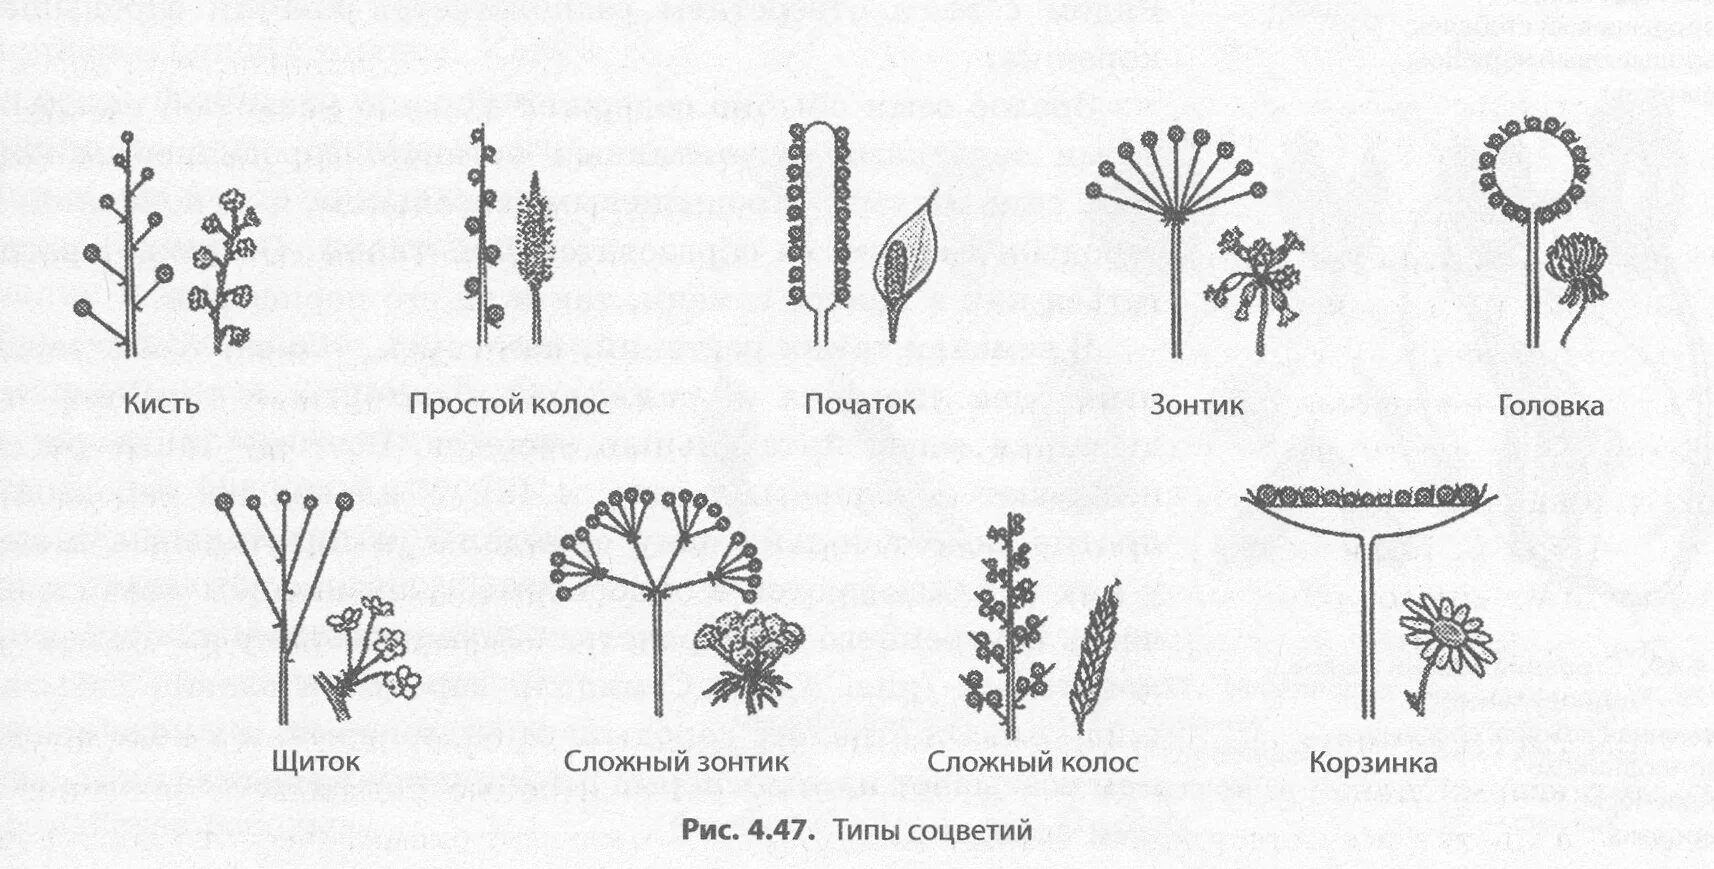 Схема соцветий цветковых растений. Соцветие полузонтик. Схема типов соцветий. Соцветие кистевидная корзинка рисунок. Какое из перечисленных соцветий относят к сложным